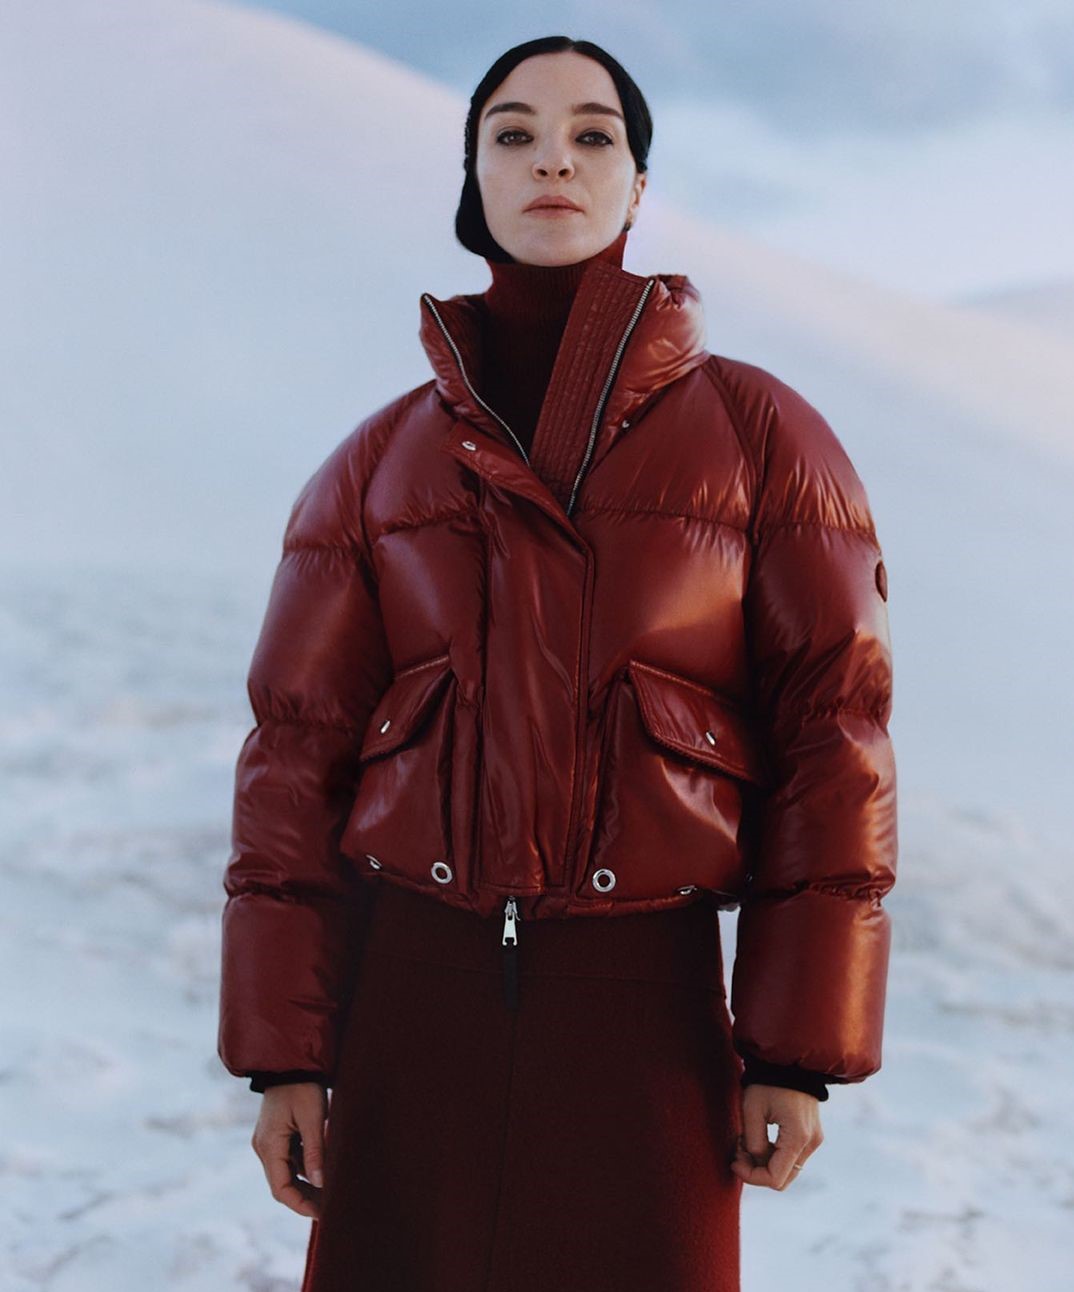 migliori giacche sci donna inverno 2021